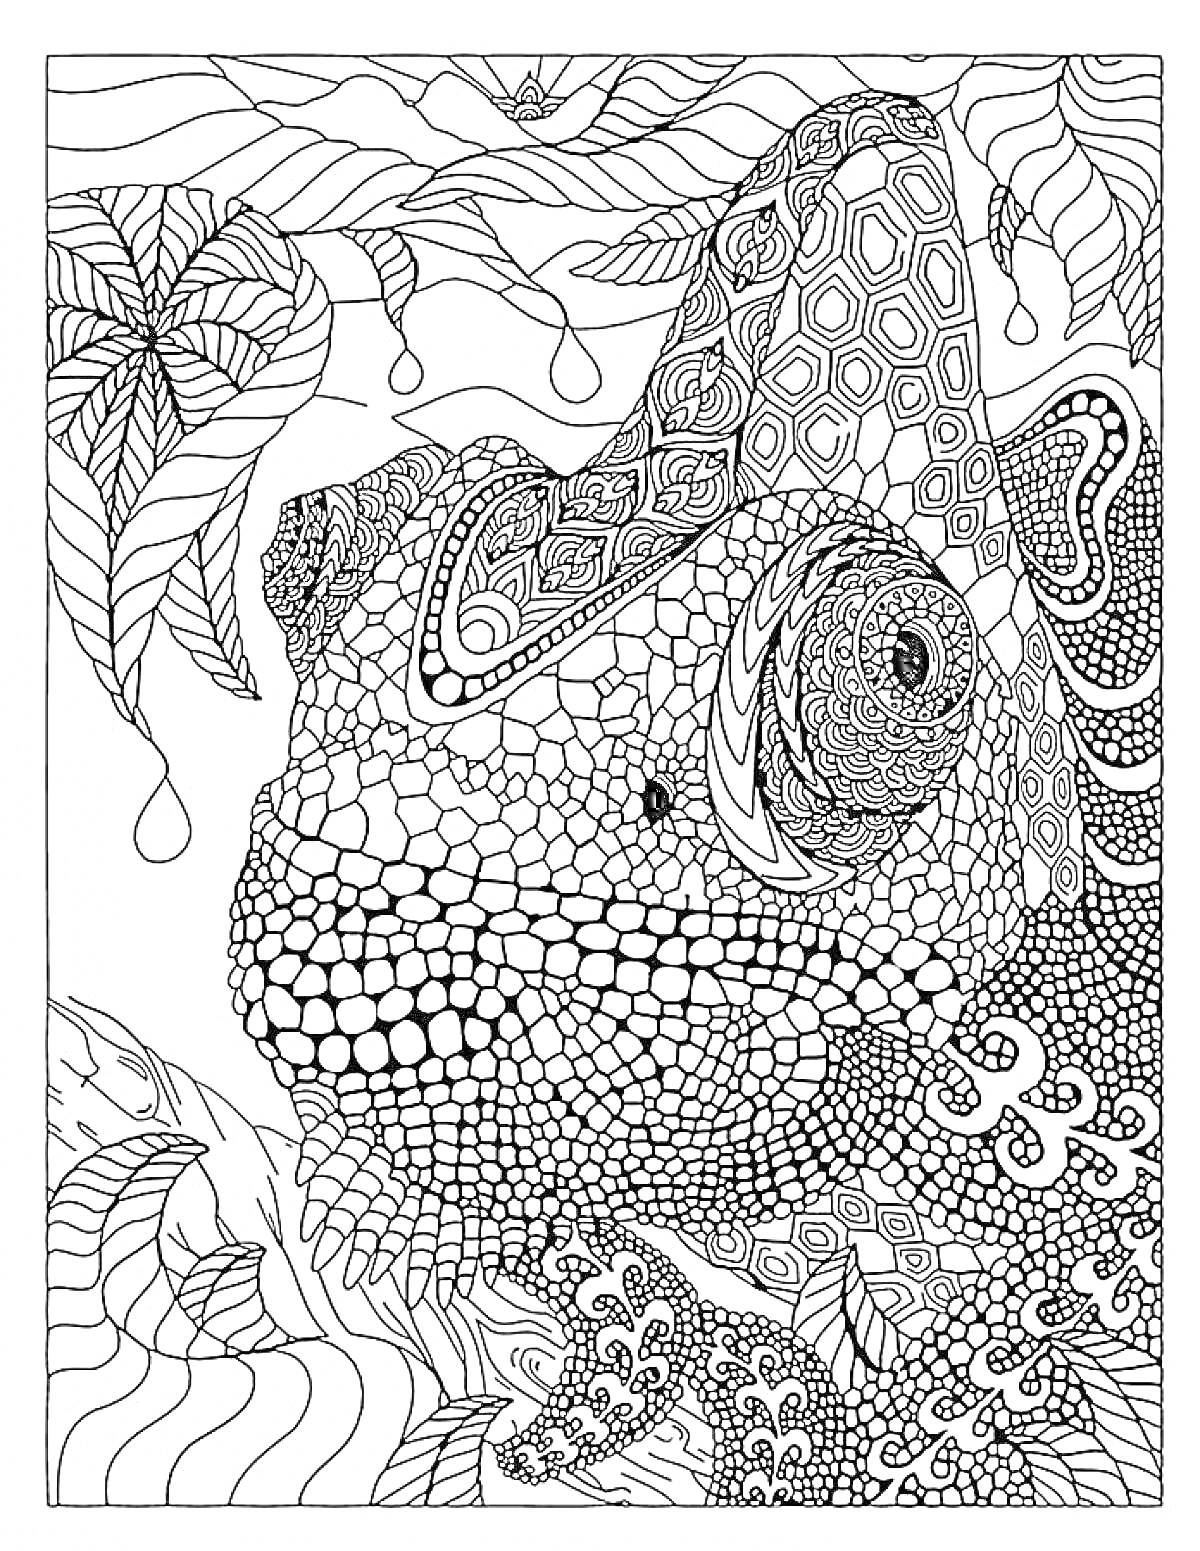 Хамелеон с листочками и рисунками на теле